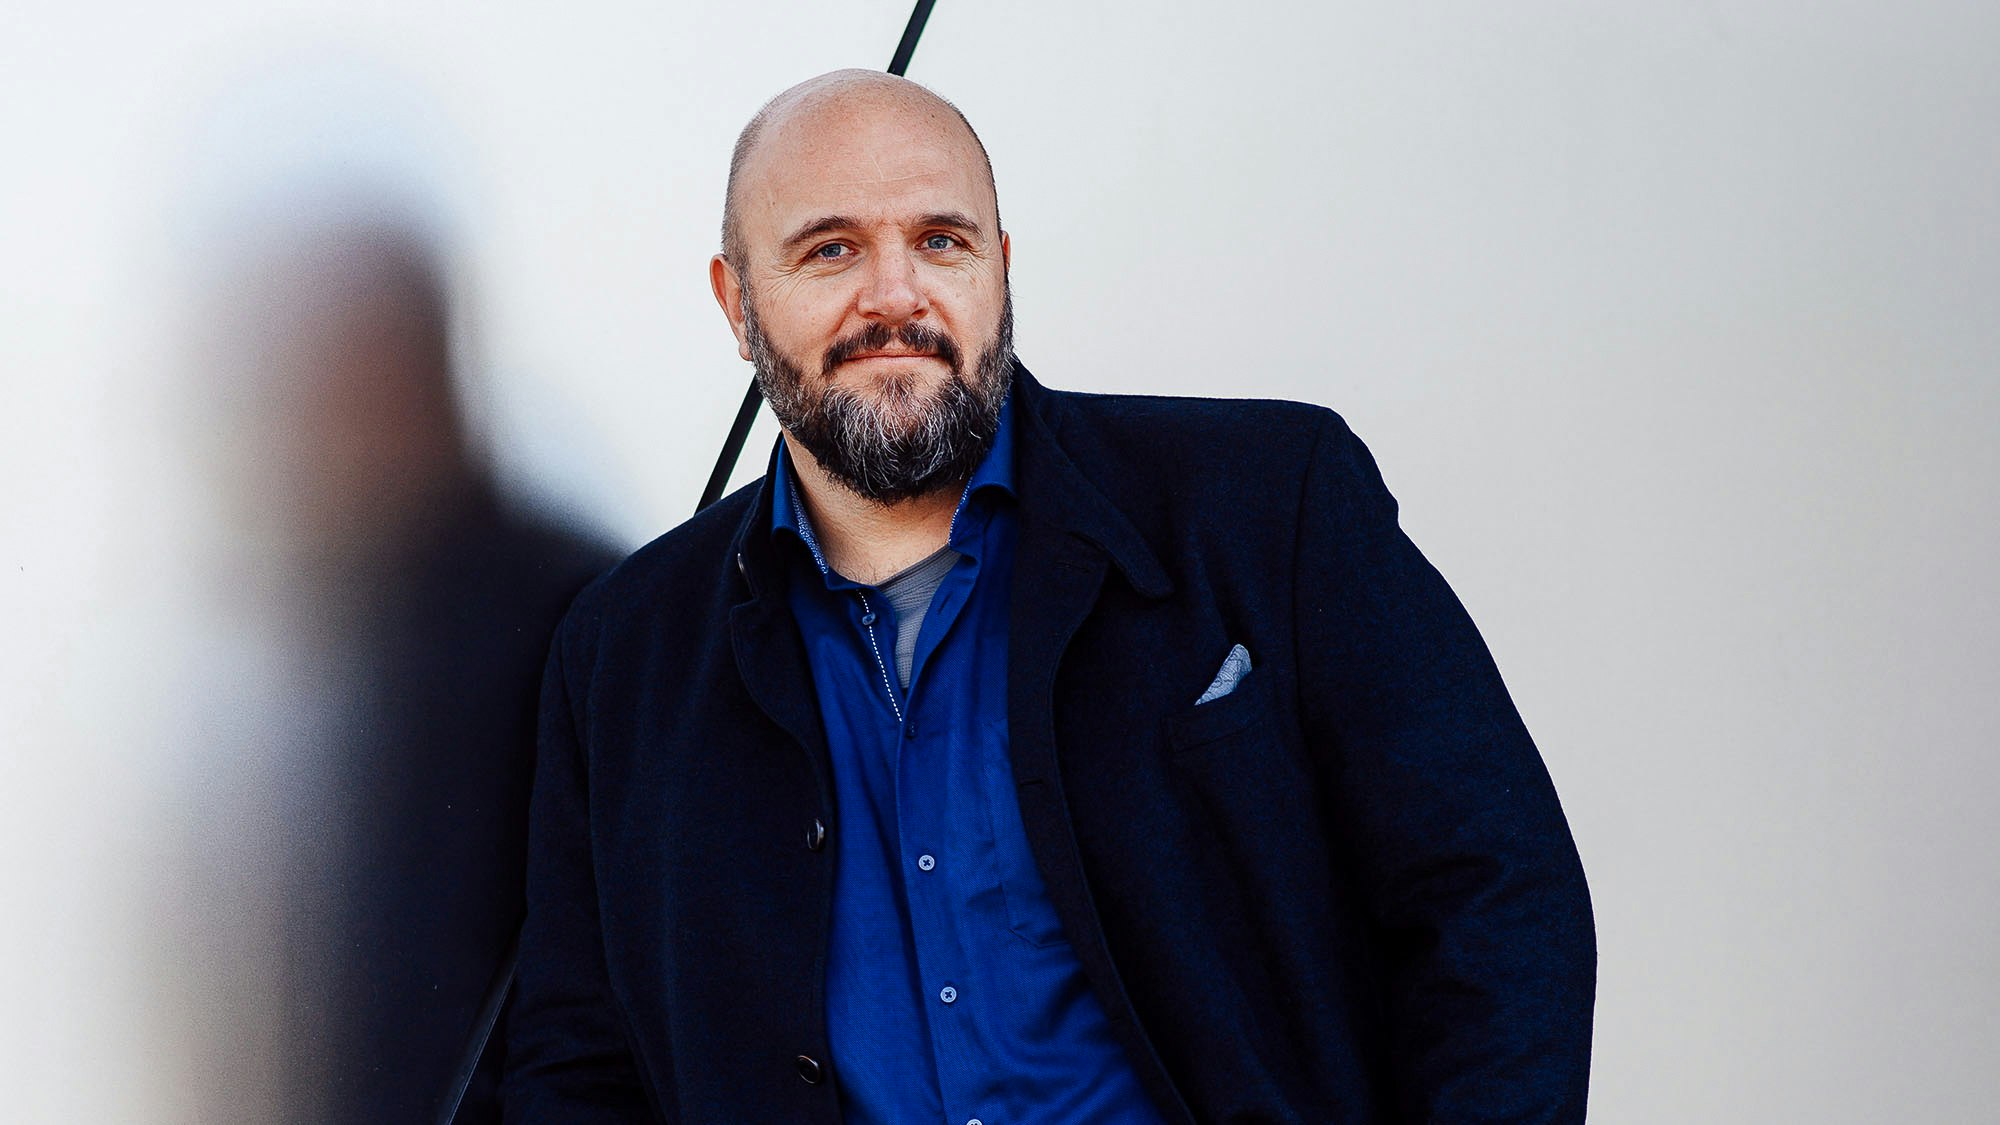 Profilfoto von Stefan Kotulla, der in einem dunkelblauen Hemd und einer offenen Anzugsjacke direkt in die Kamera schaut.